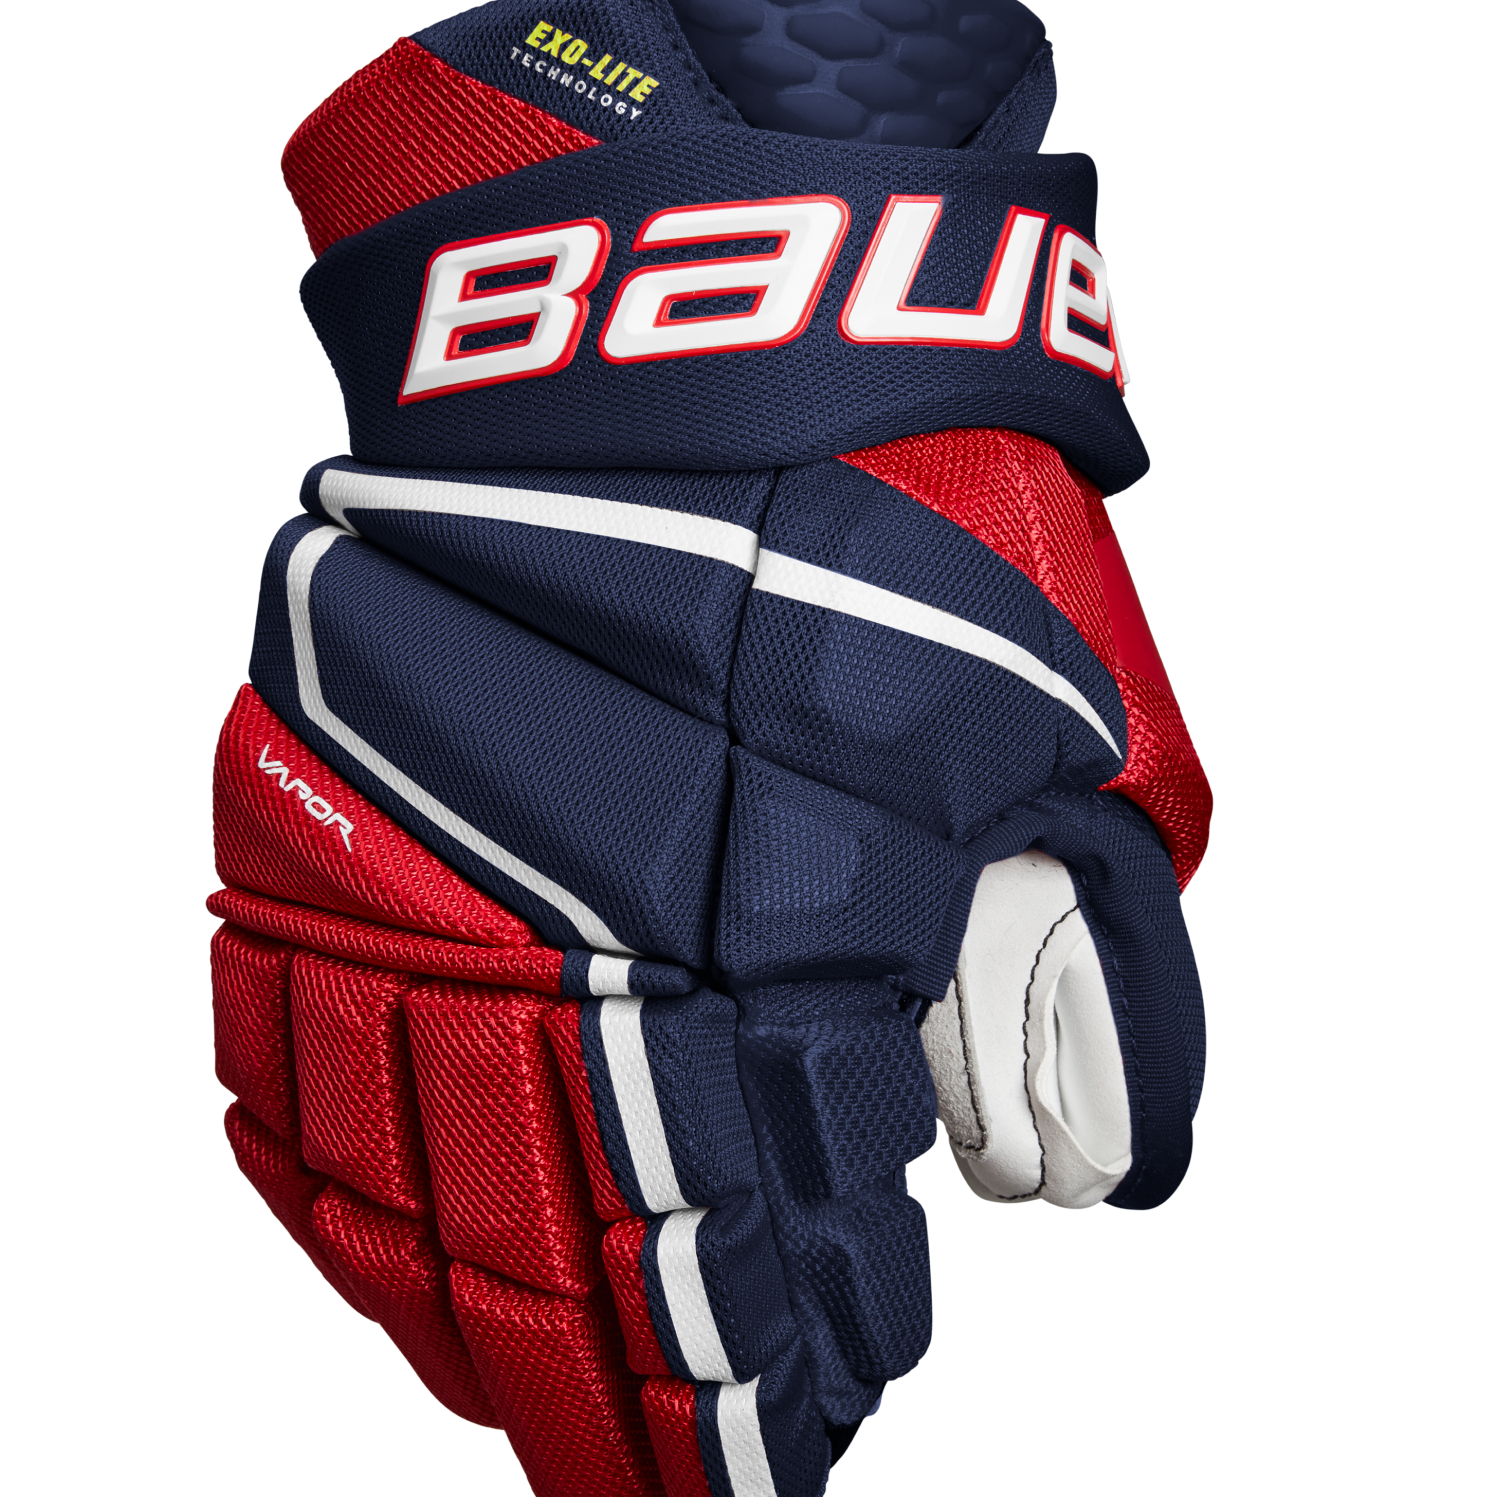 Hockey Player Gloves